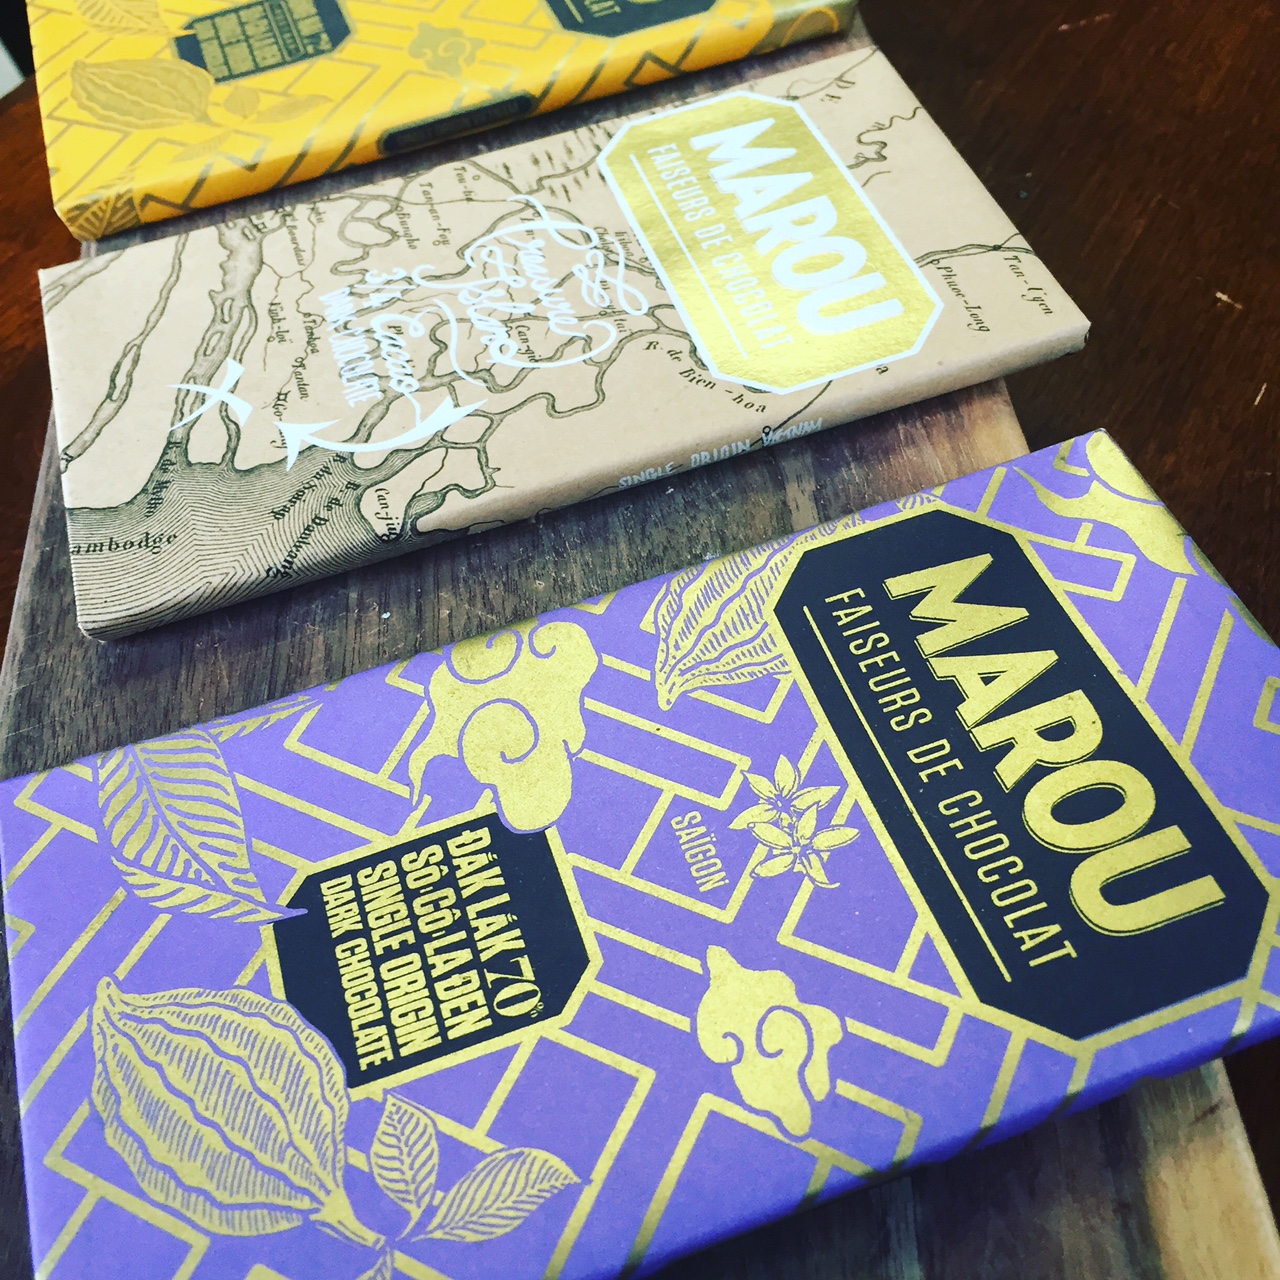 Marou from Vietnam Chocolate package - taste the origin